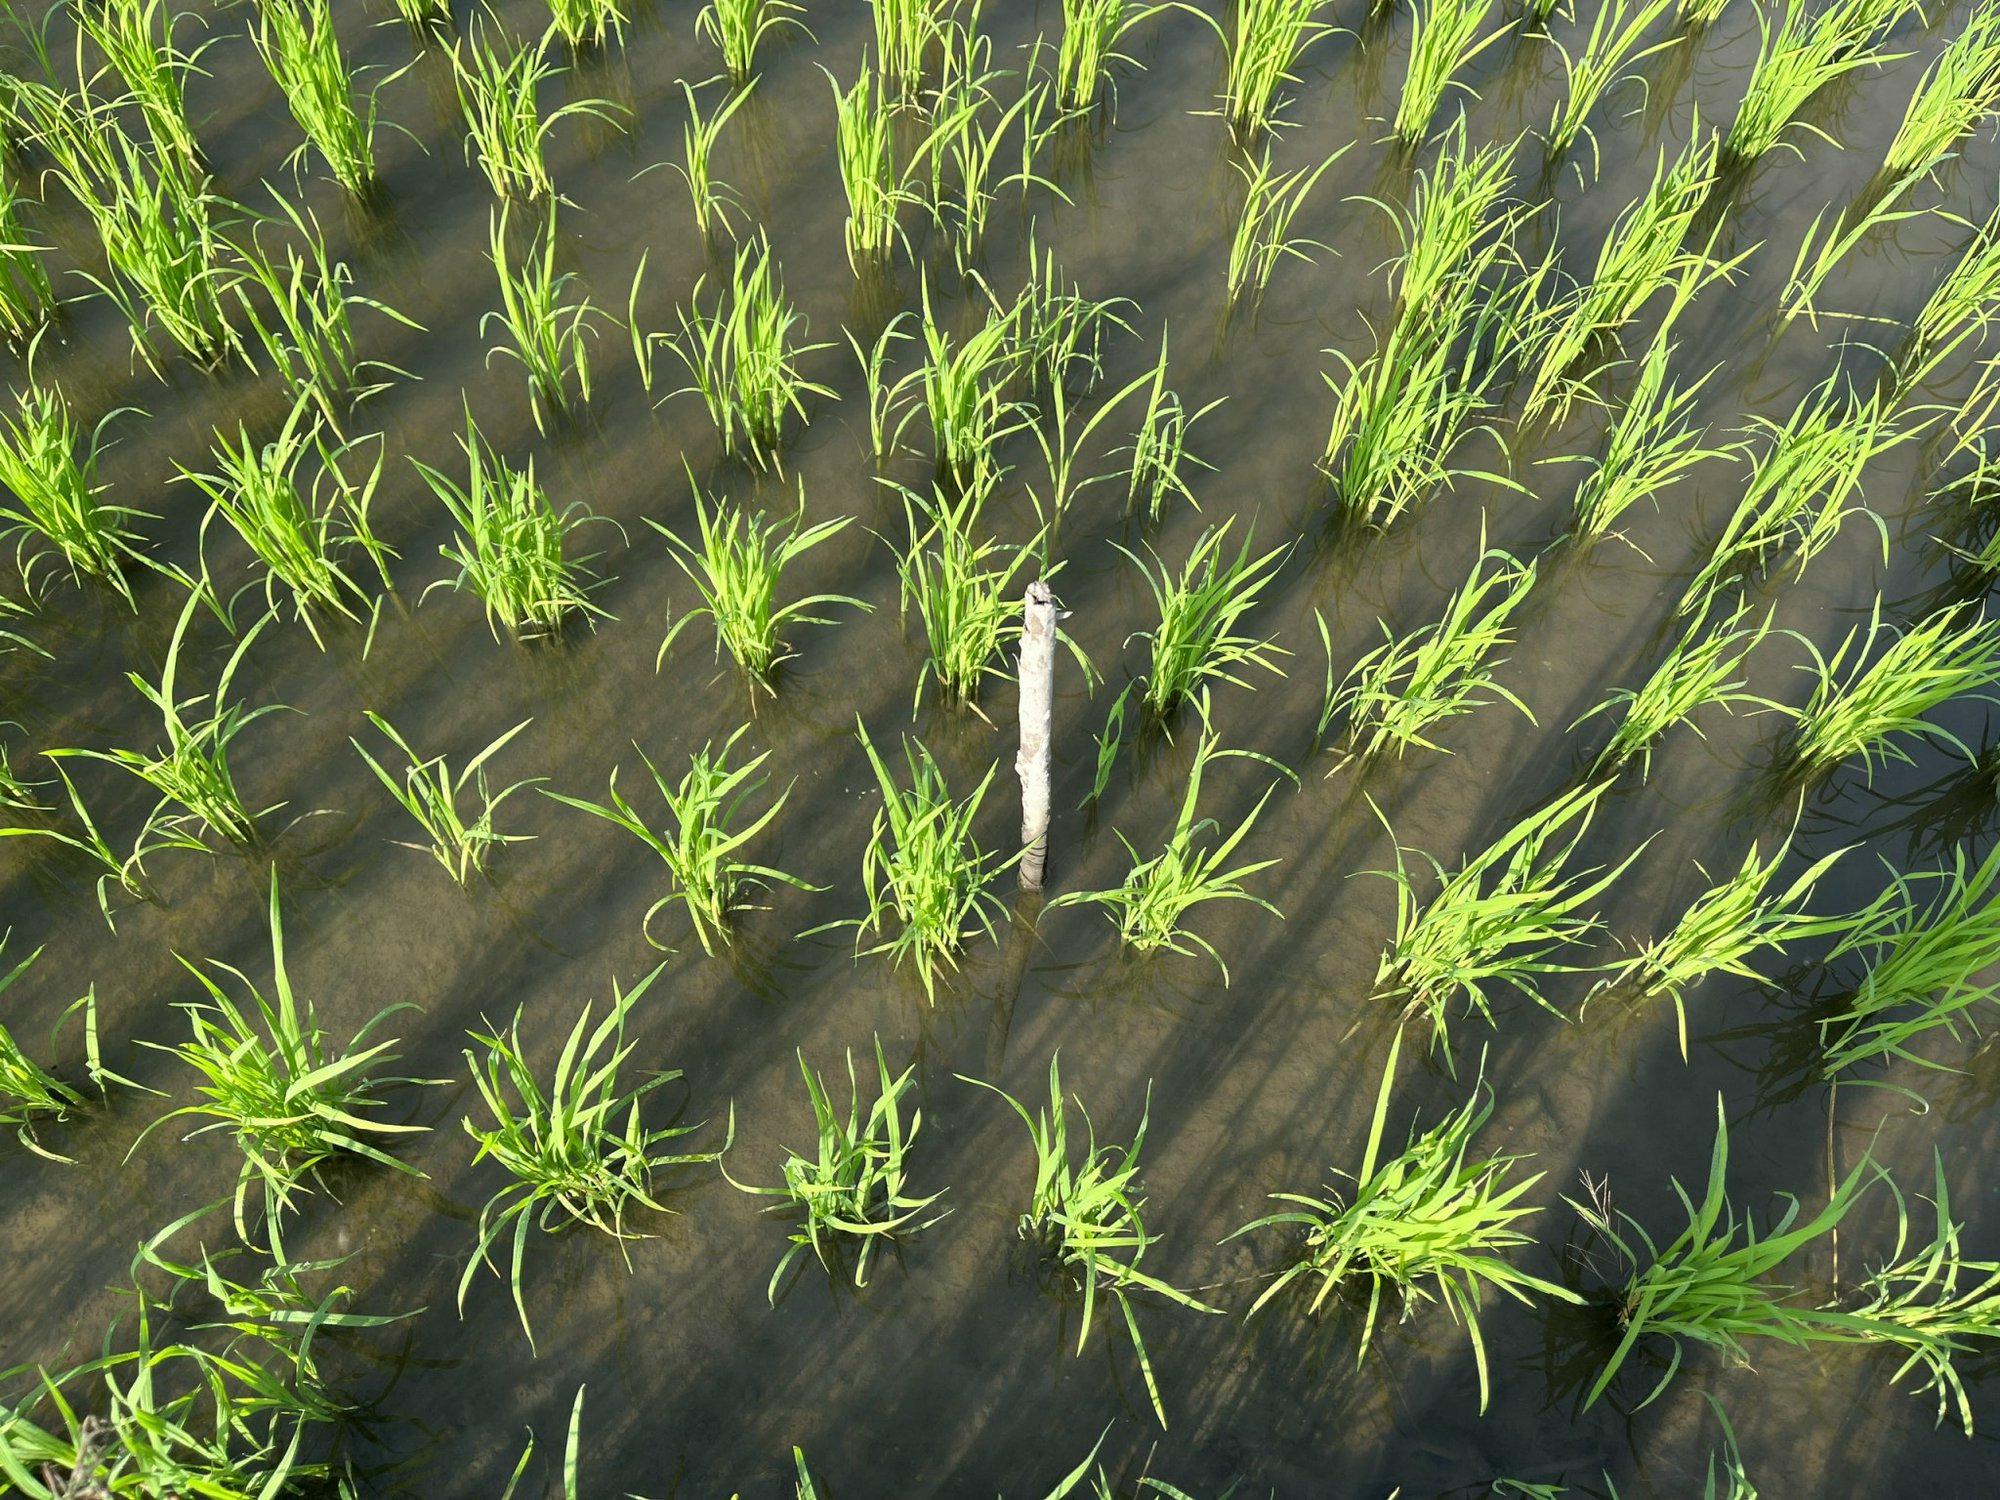 Ứng dụng máy sạ cụm trong giảm giống gieo sạ trên cây lúa tại Đồng bằng Sông Cửu Long - Ảnh 4.